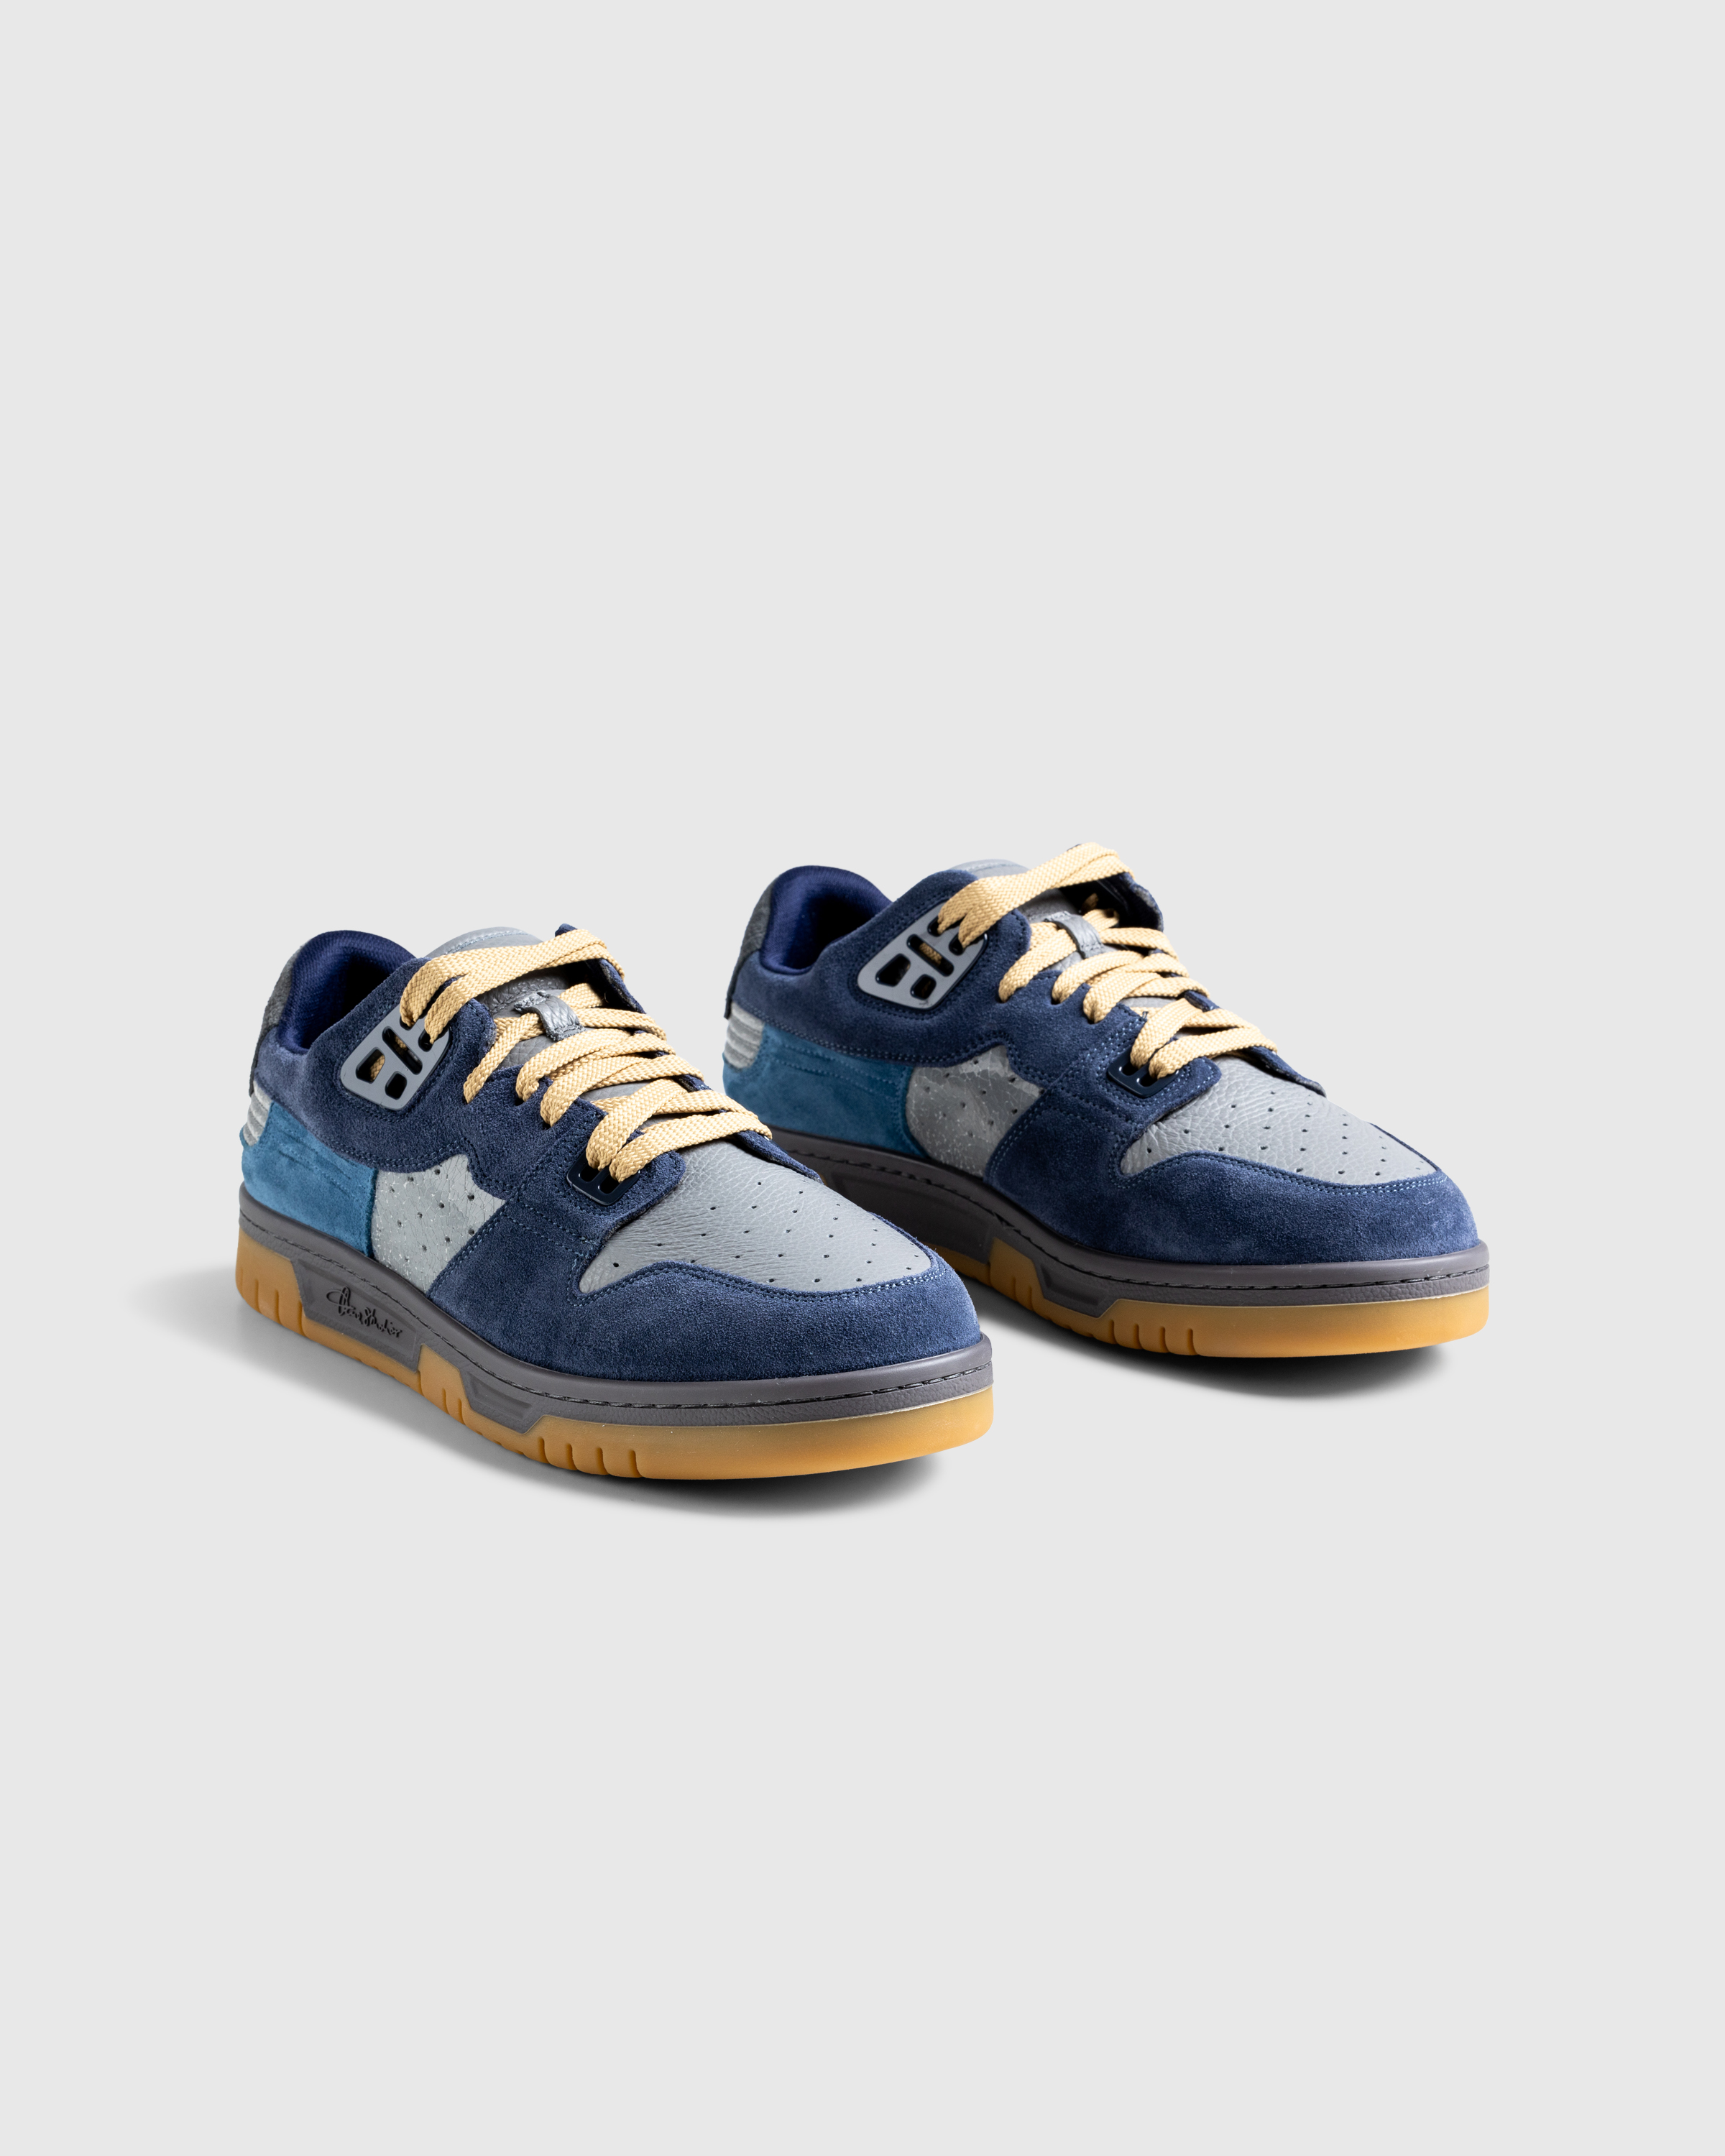 Acne Studios – Low-Top Sneakers Grey Blue - Sneakers - Blue - Image 3